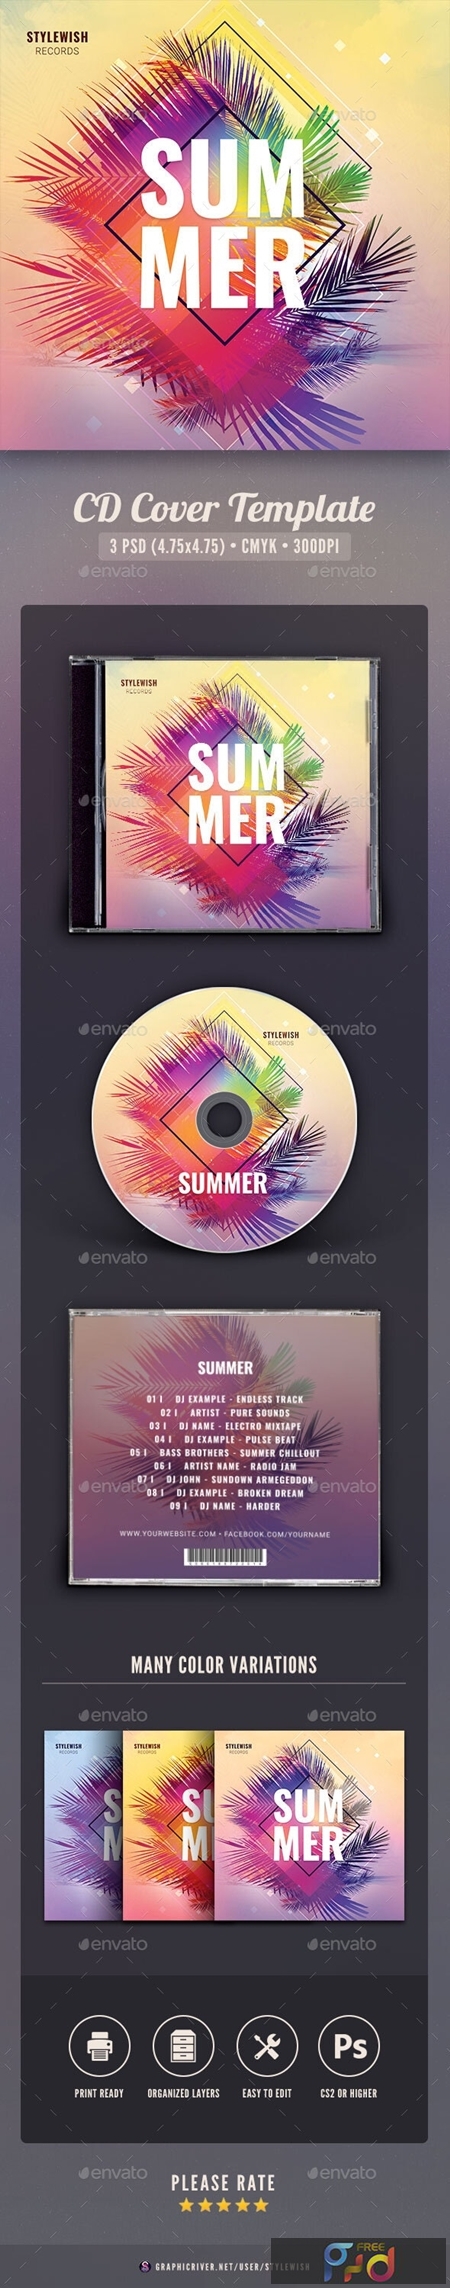 Summer CD Cover Artwork 25793397 - FreePSDvn